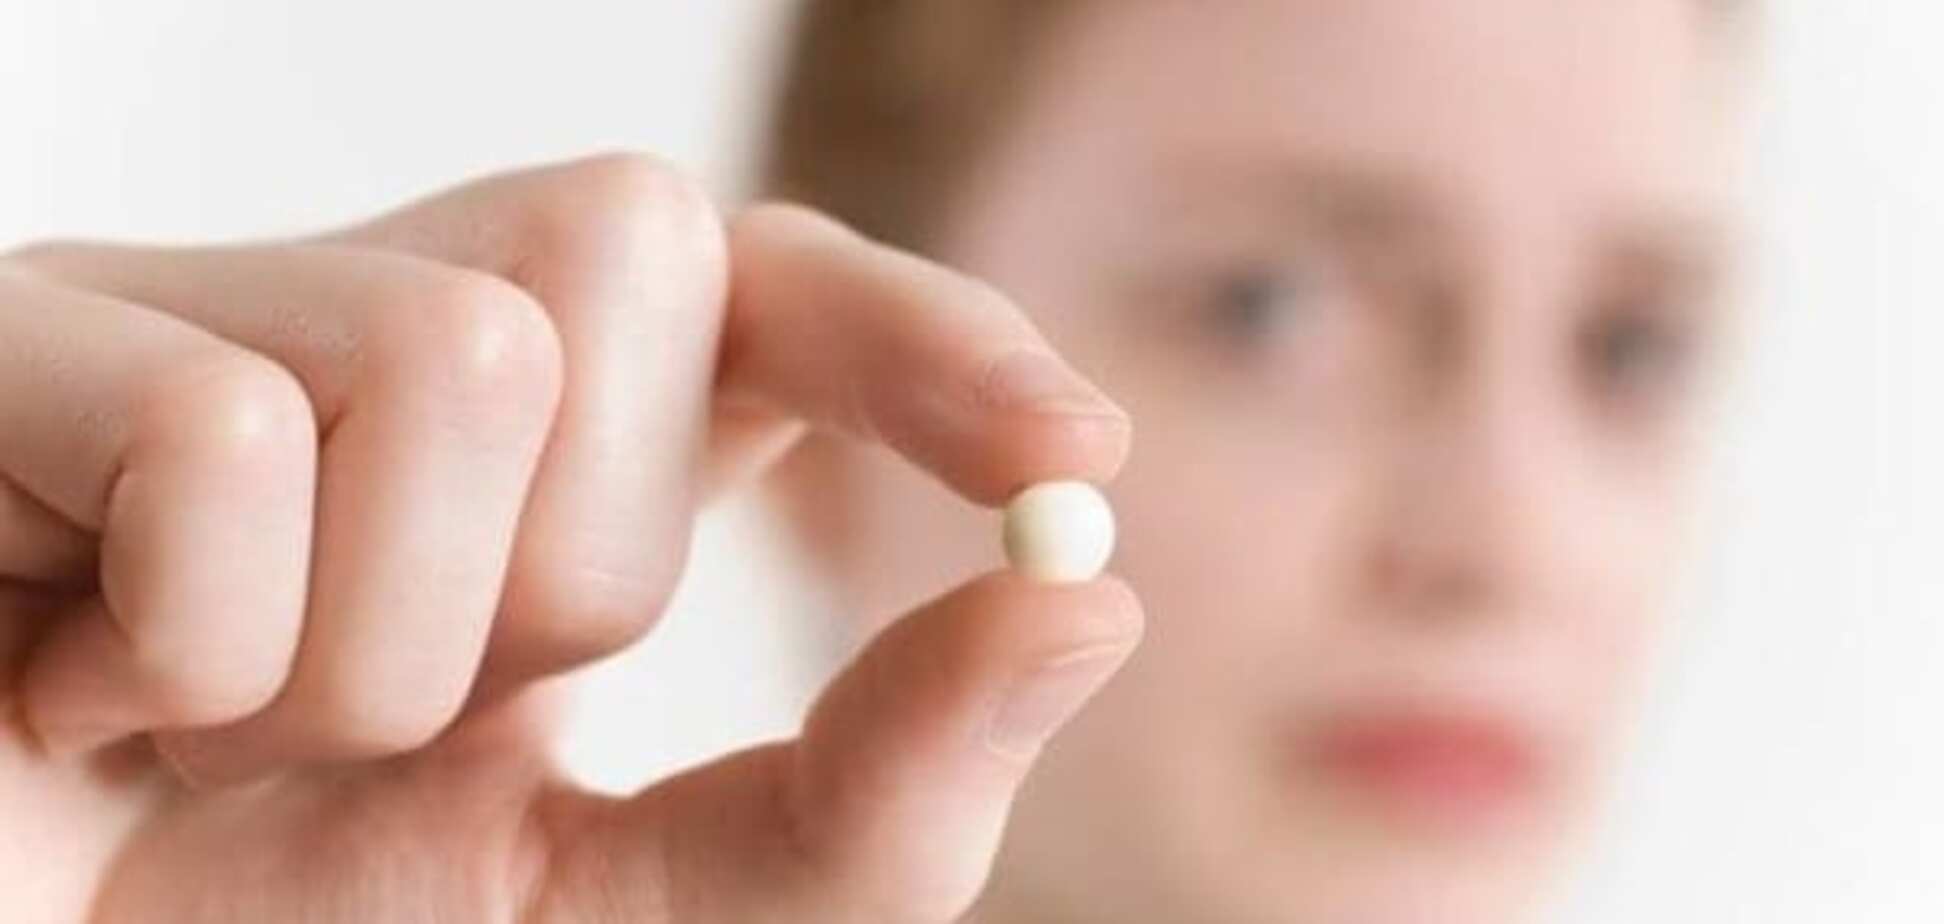 Вот вам и таблетки! Правда о гормональной контрацепции 